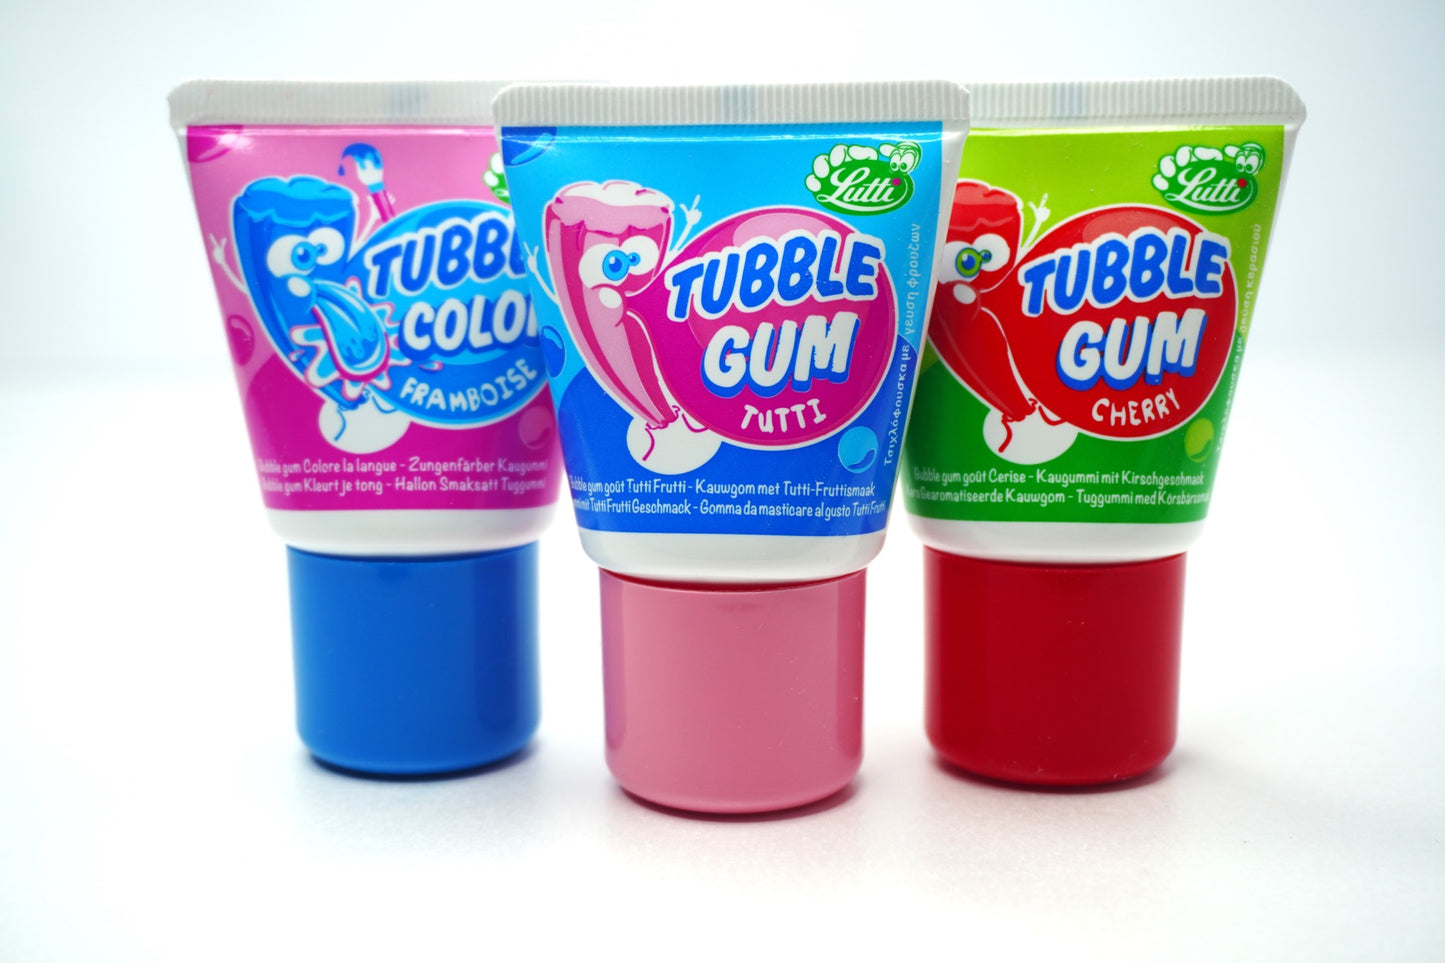 Tubble Gum Mix Explosion Flavors 3 Count Box